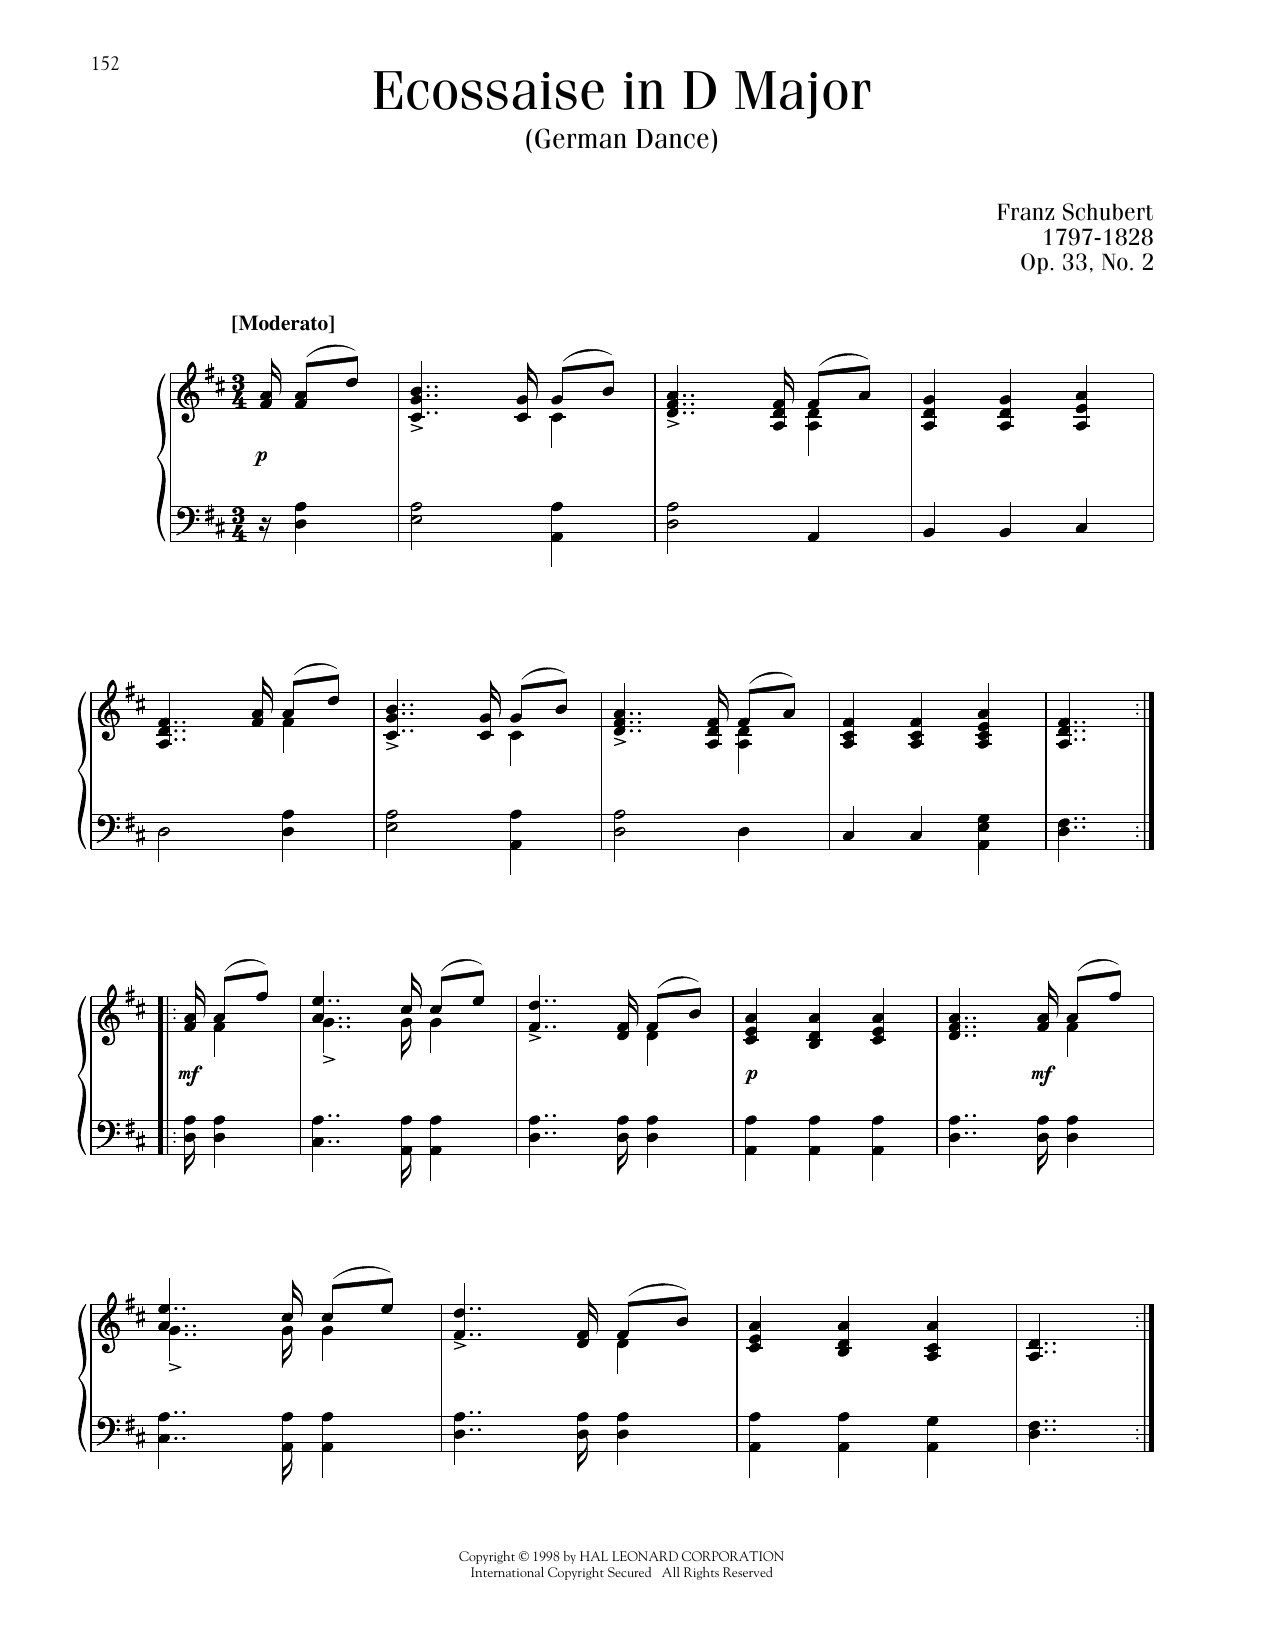 Franz Schubert Ecossaise in D Major, Op. 33, No. 2 (German Dance) sheet music notes printable PDF score